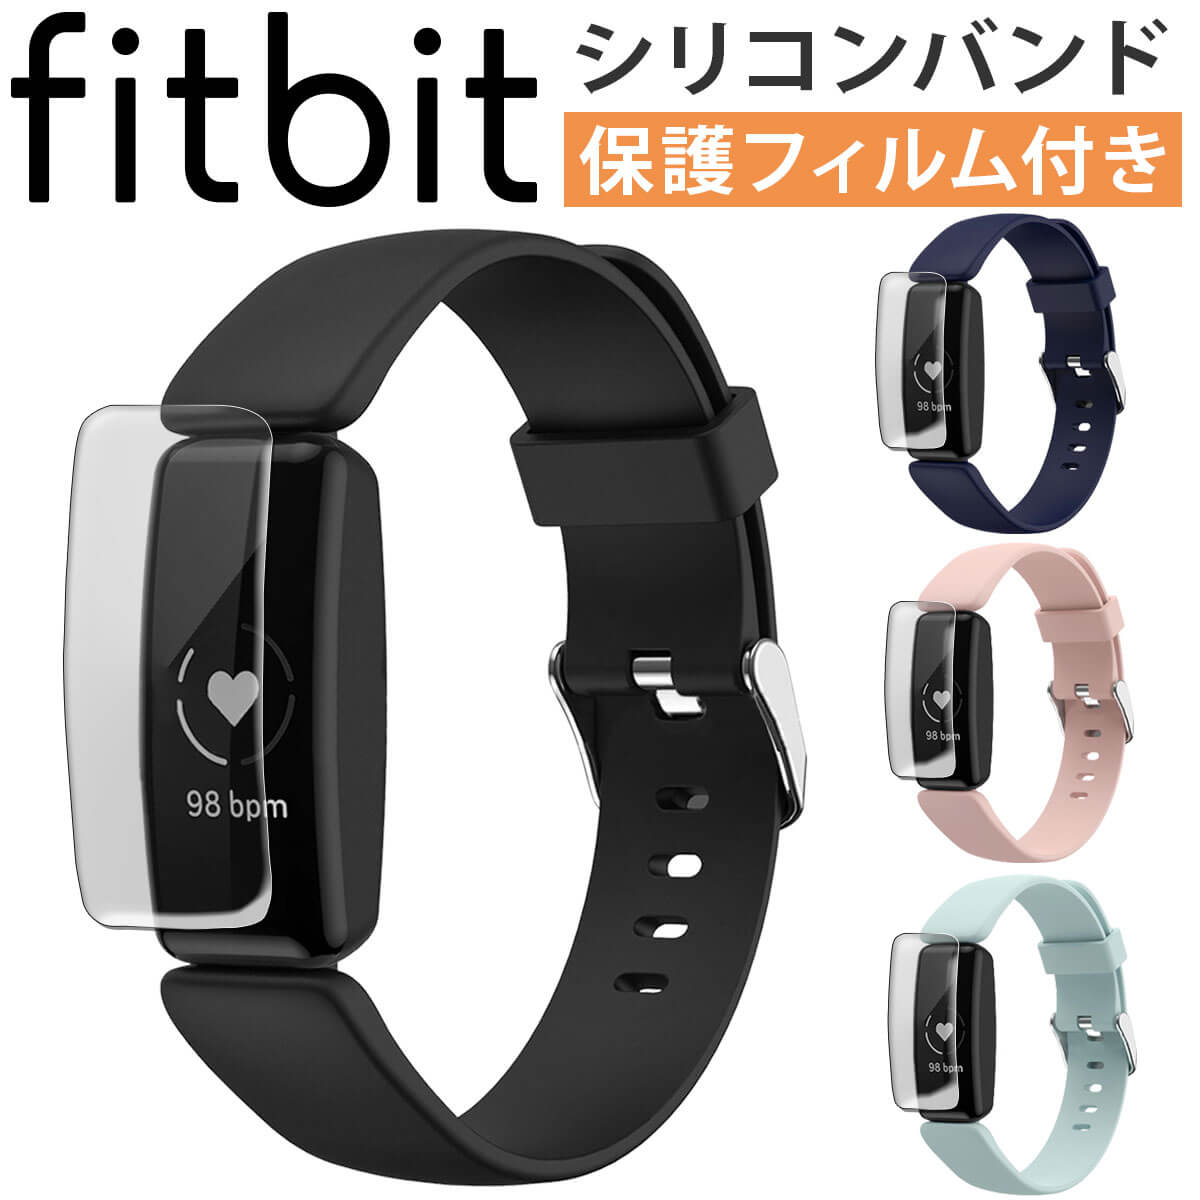 【在庫処分セール】【保護フィルム付き】Fitbit Inspire2 交換 ベルト バンド シリコン fitbit 対応 バンド フィットビット インスパイア2 レディース メンズ ユニセックス 互換品